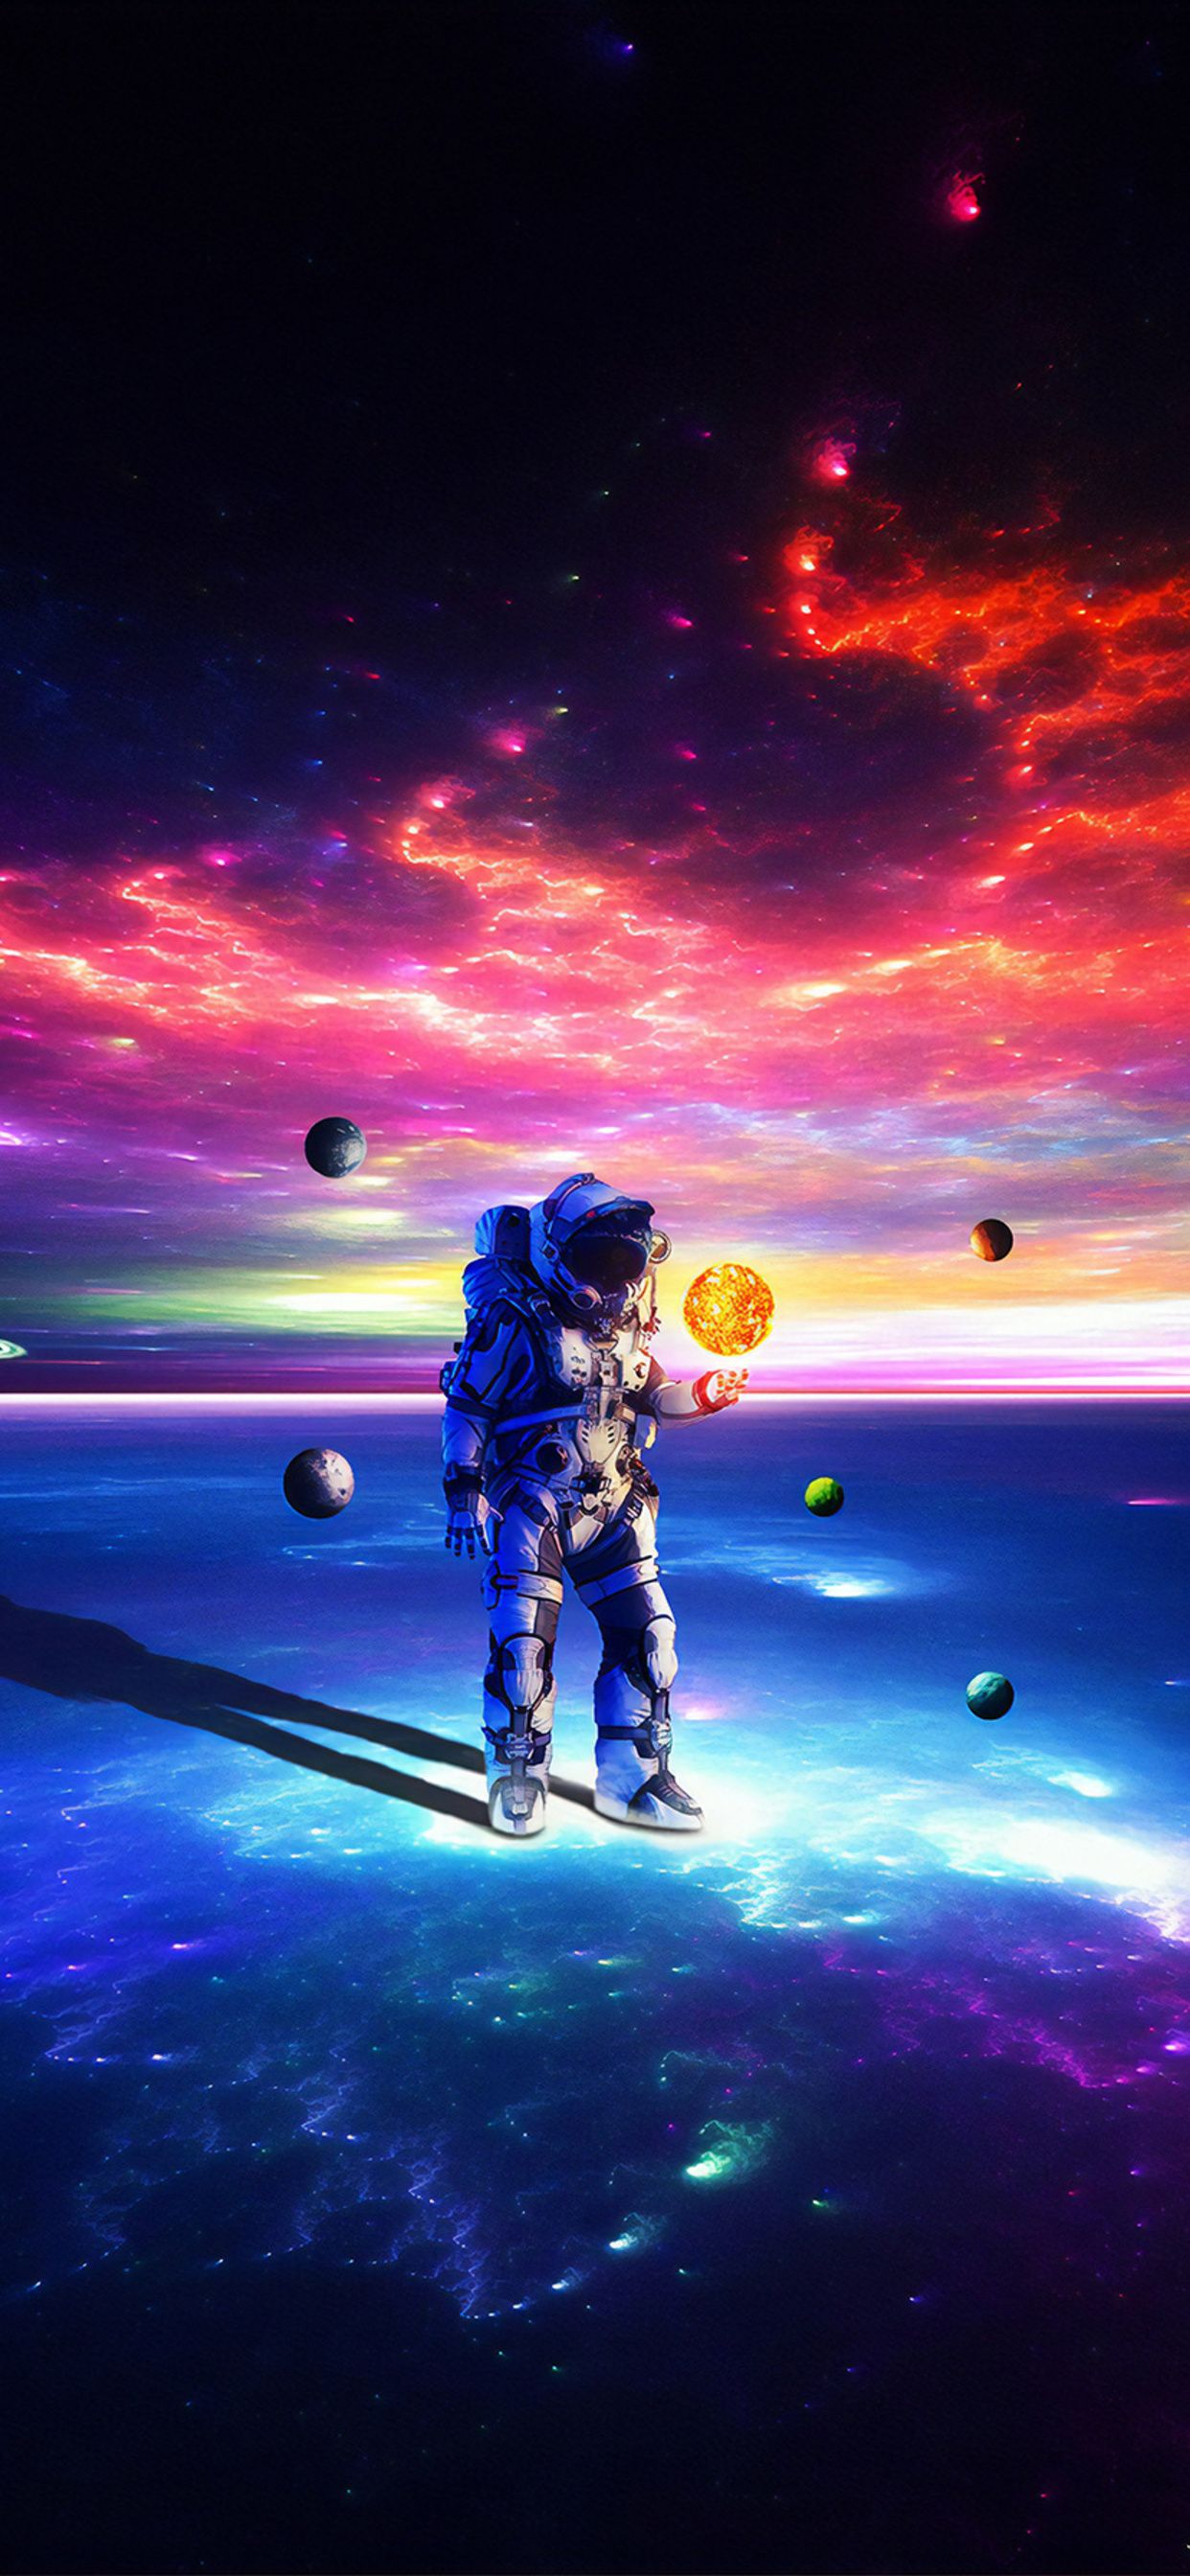 Astronaut In The Ocean neon spaceman HD wallpaper  Pxfuel